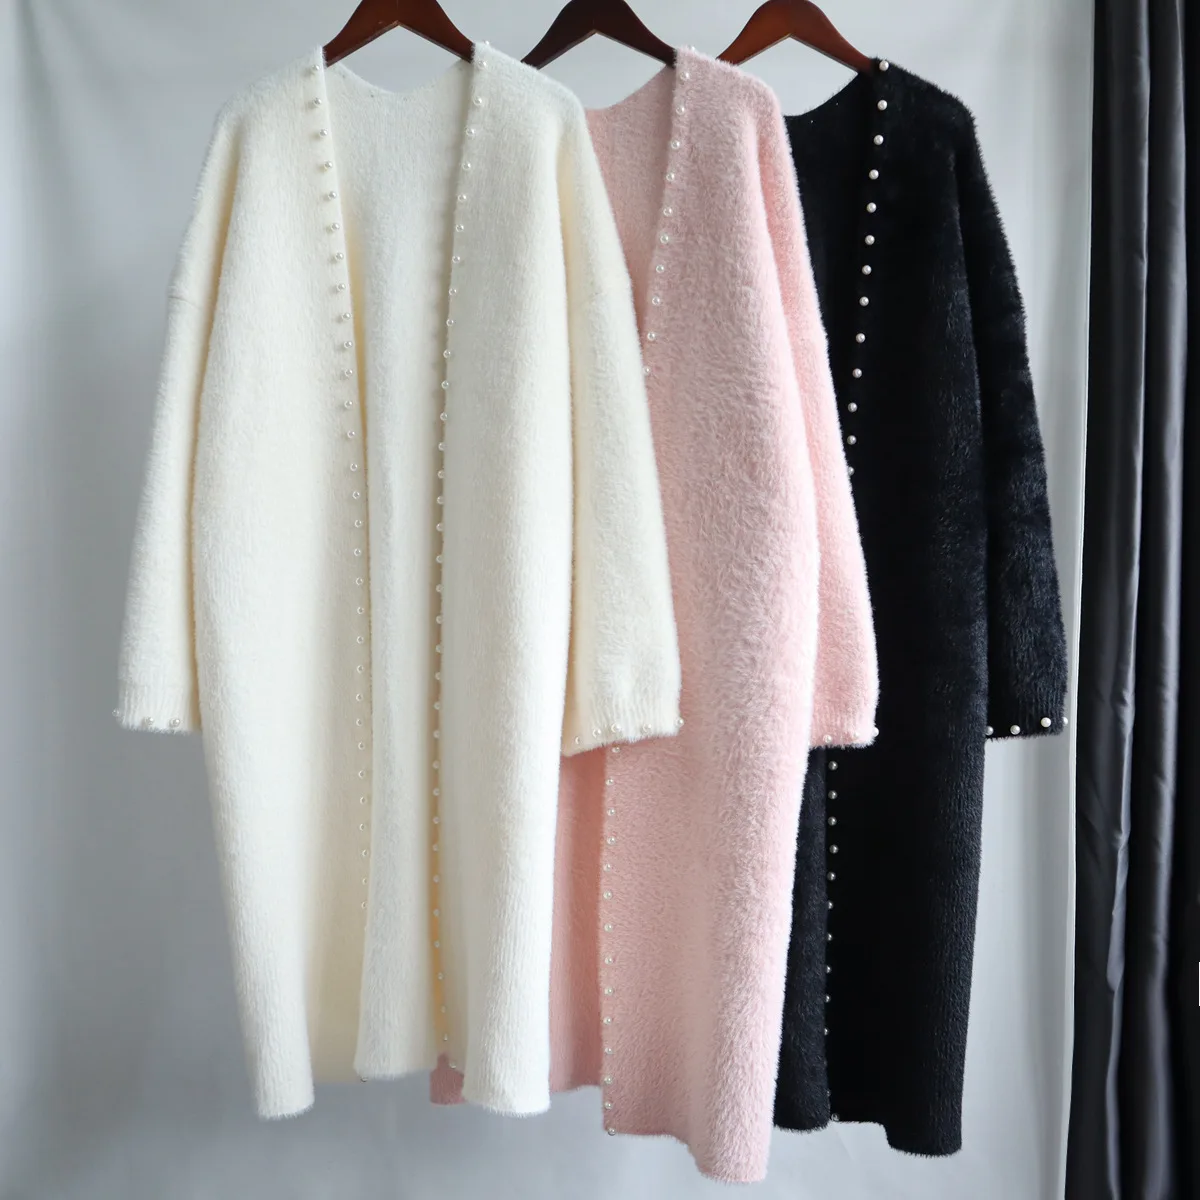 Faux Mink Cashmere Beading Long Sweat Sweater Coat Women's Autumn Winter Korean Version Knitted Cardigan Knitwear Outwear